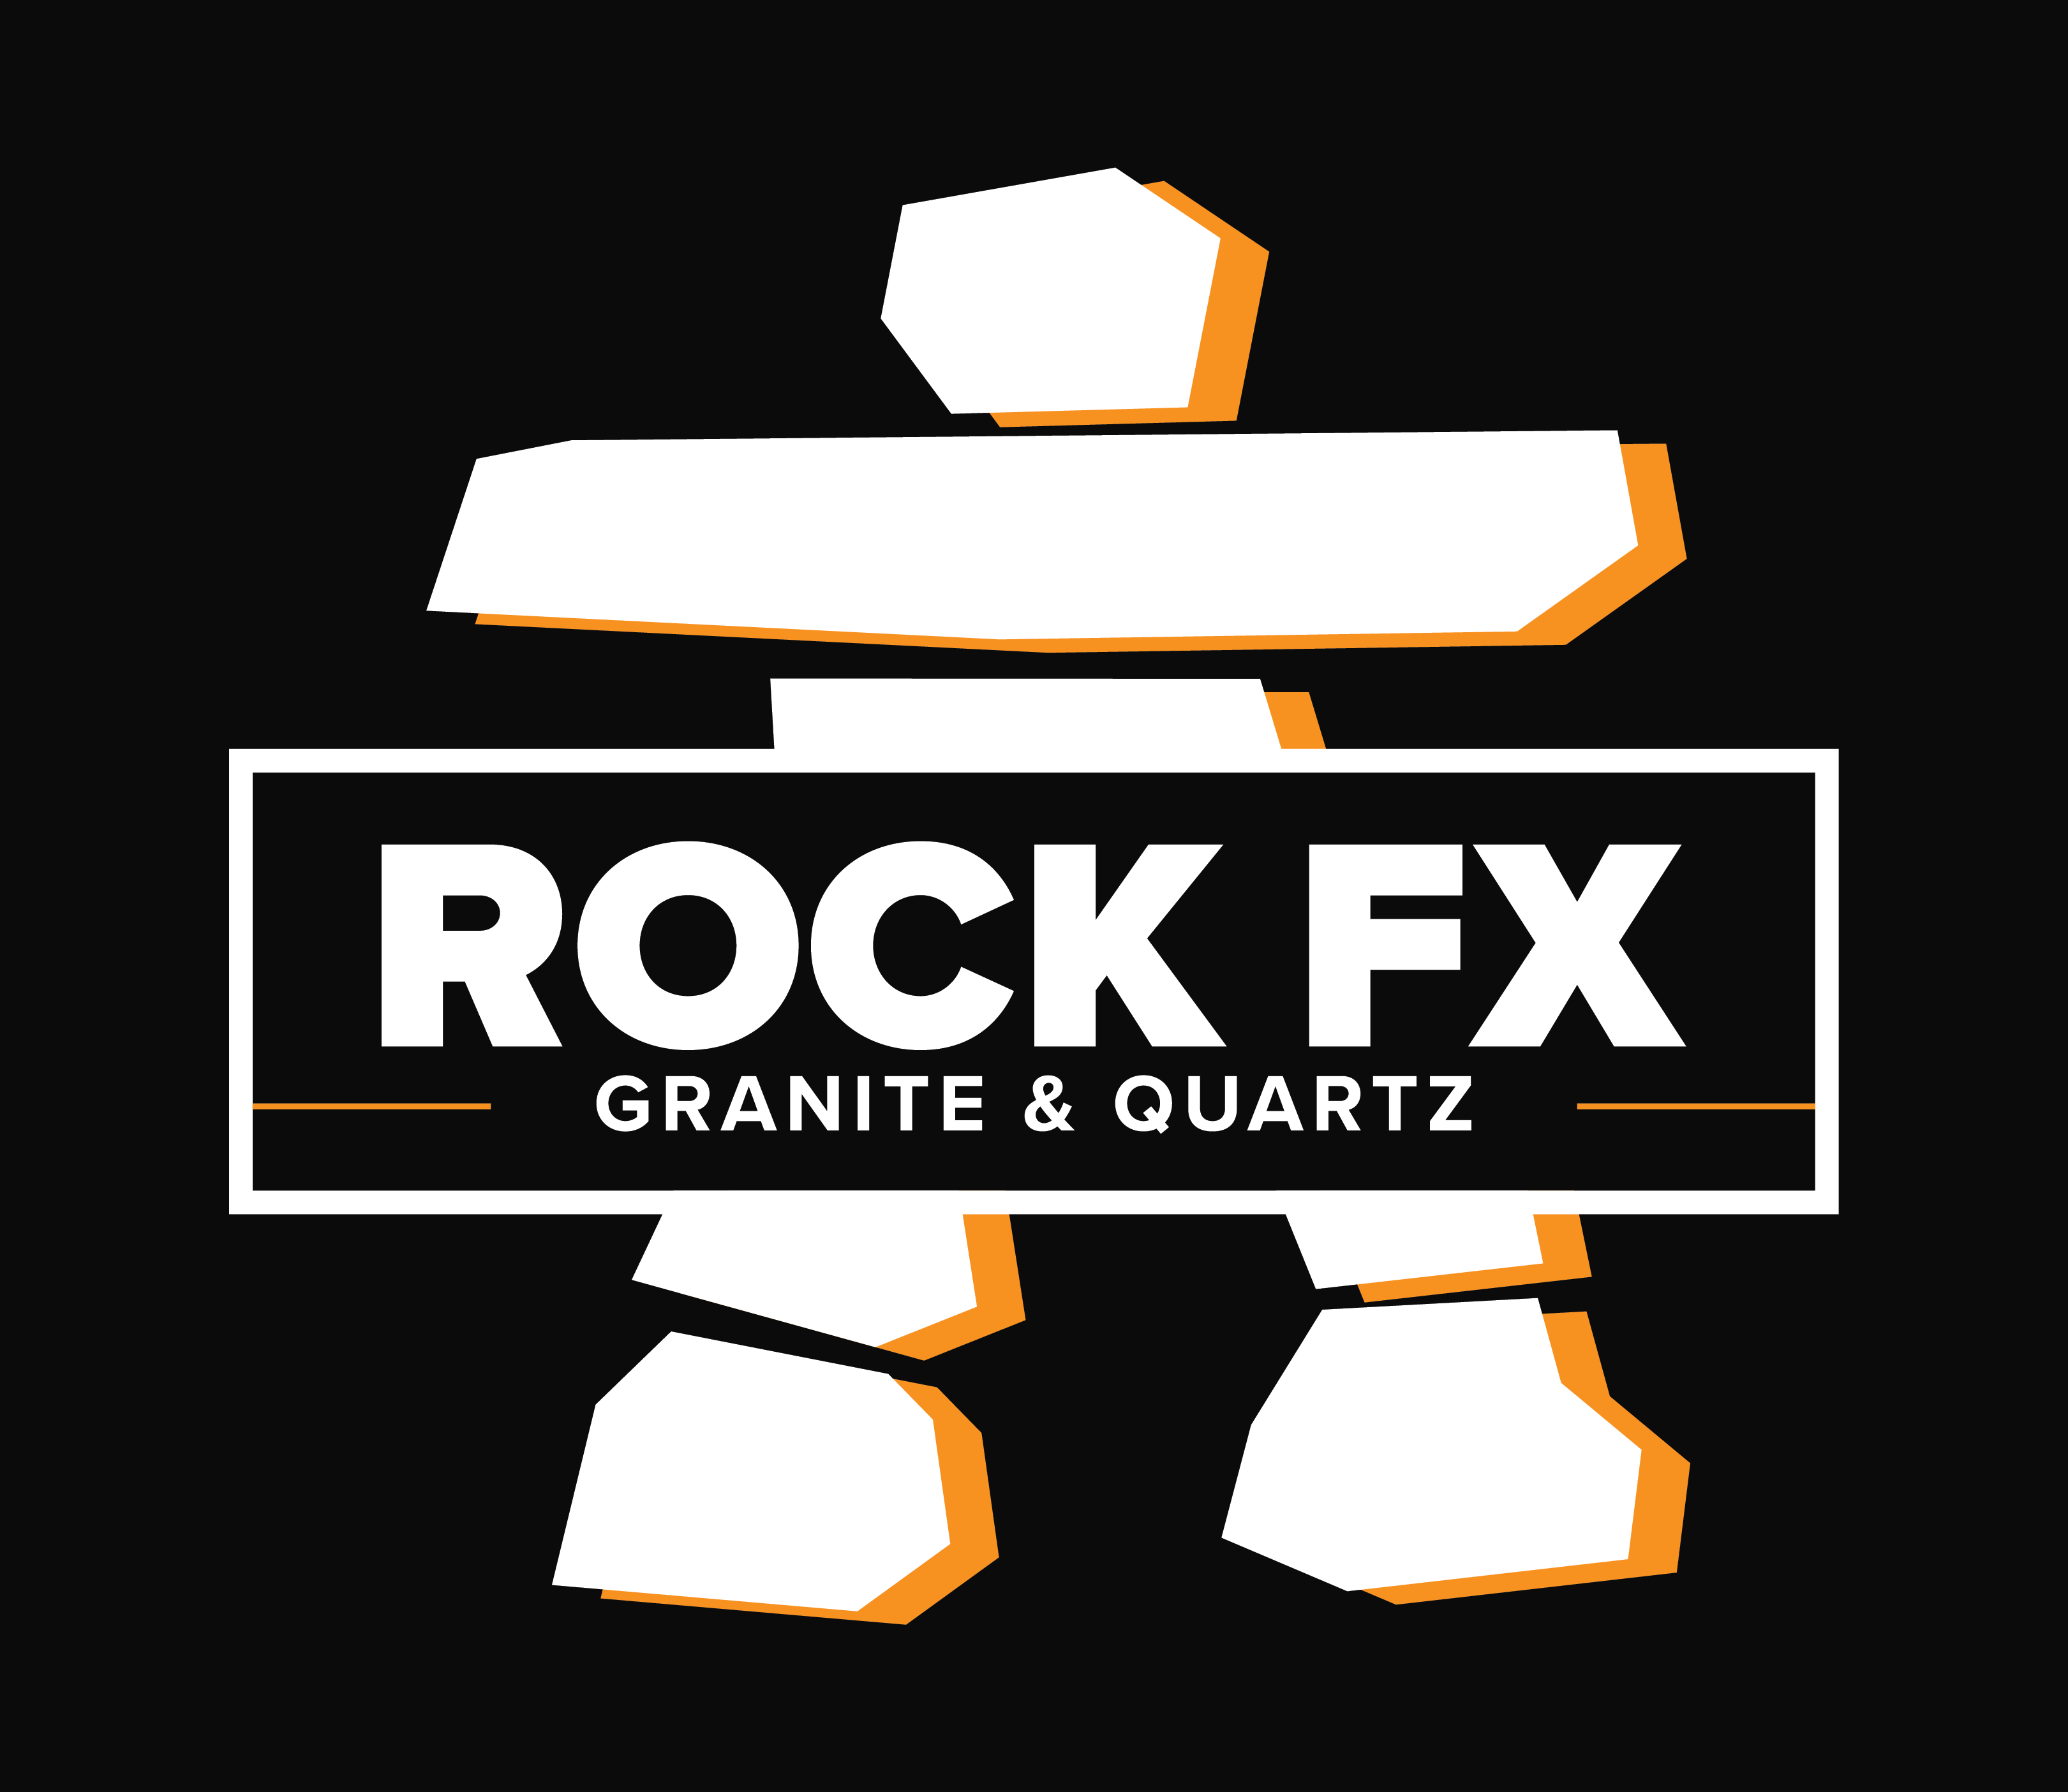 Full colour Rock FX logo on black background